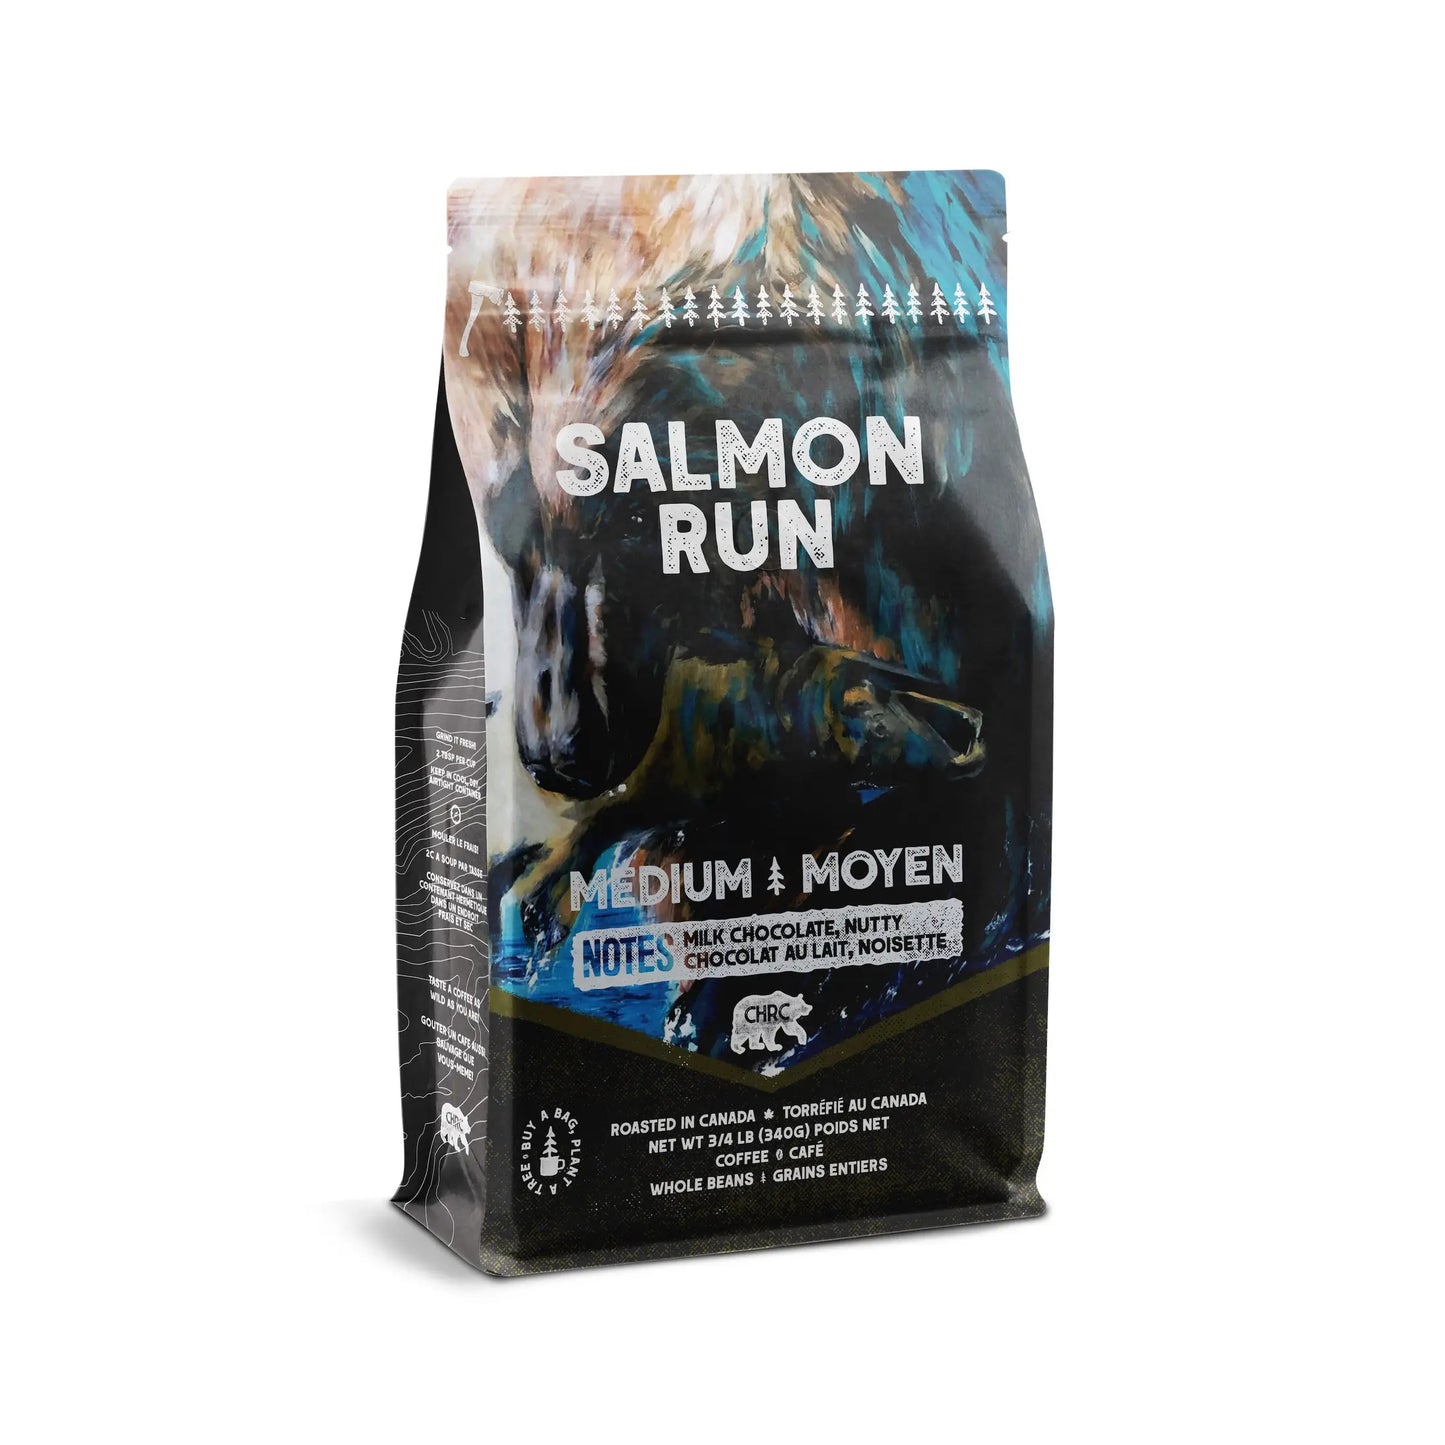 CHR - Salmon Run Medium Coffee